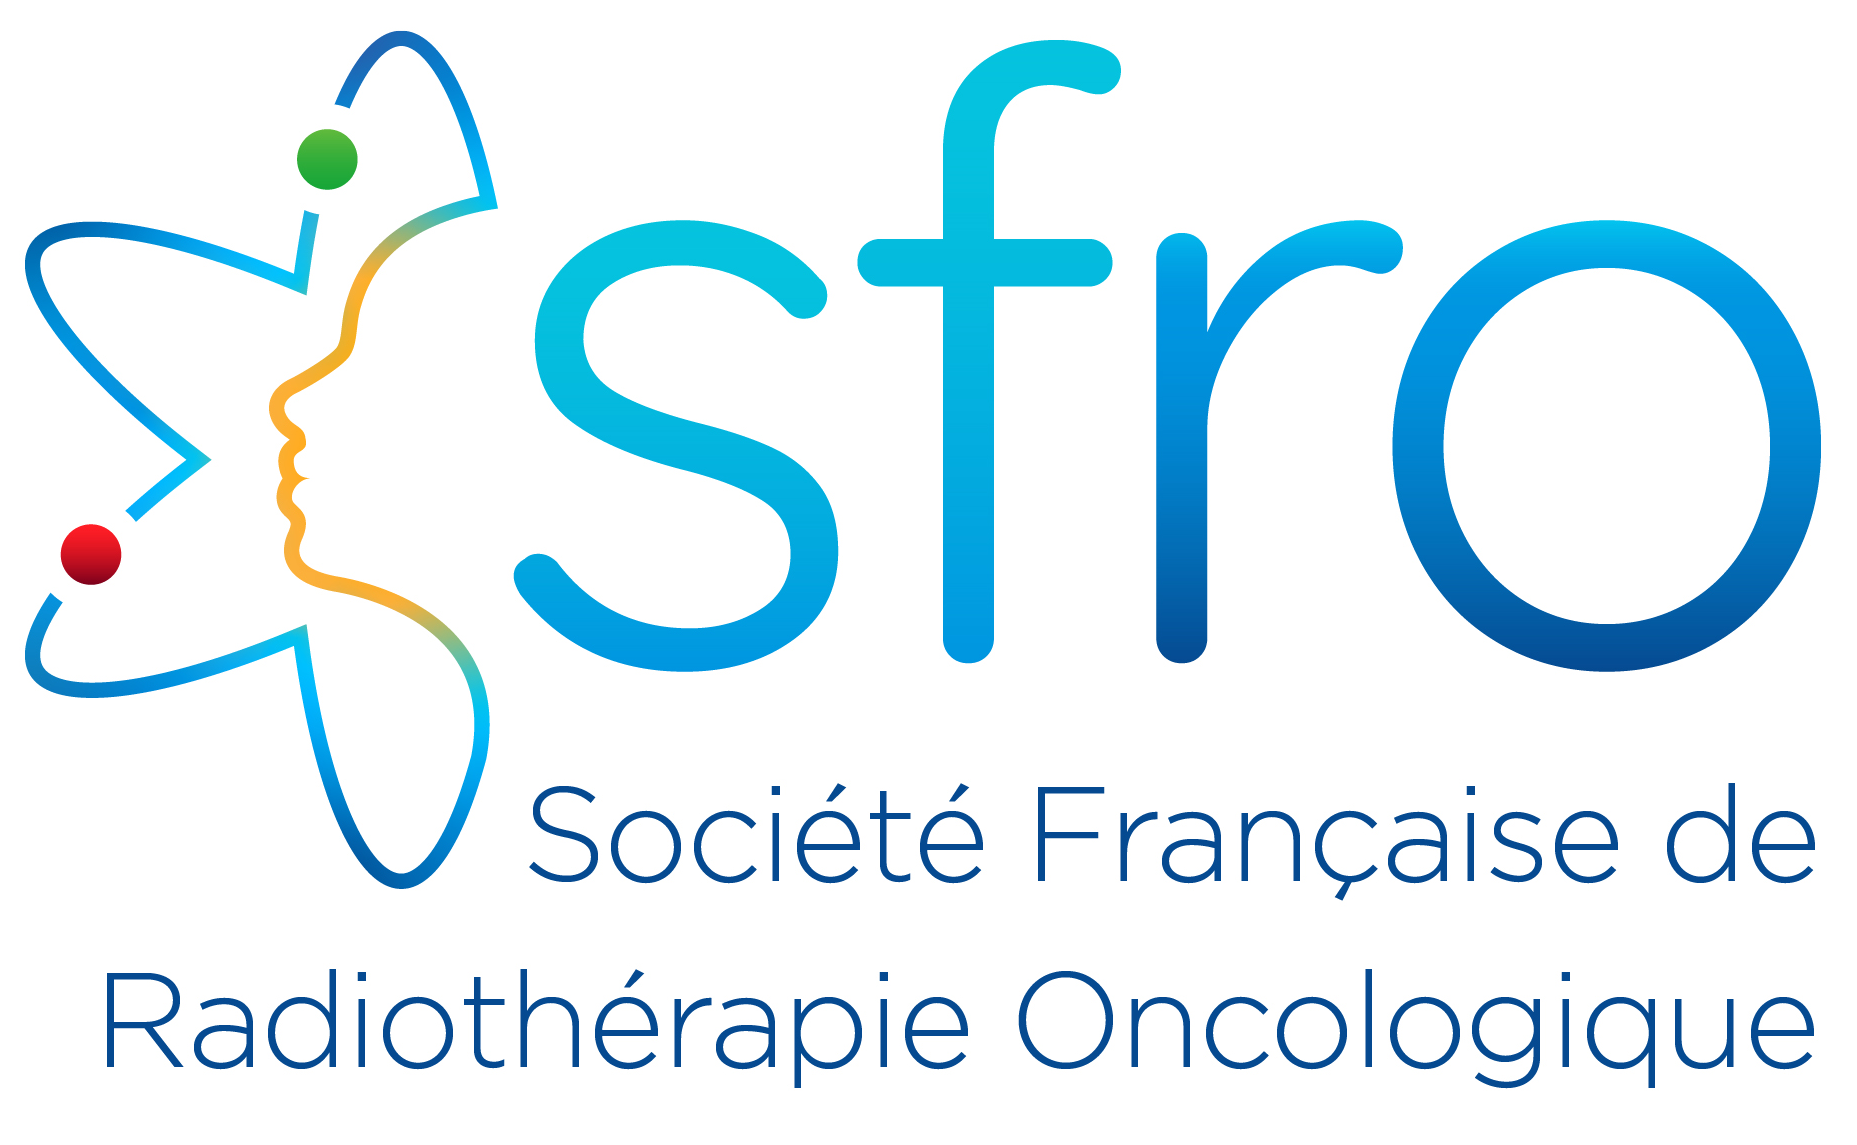 Société Française de Radiothérapie Oncologique